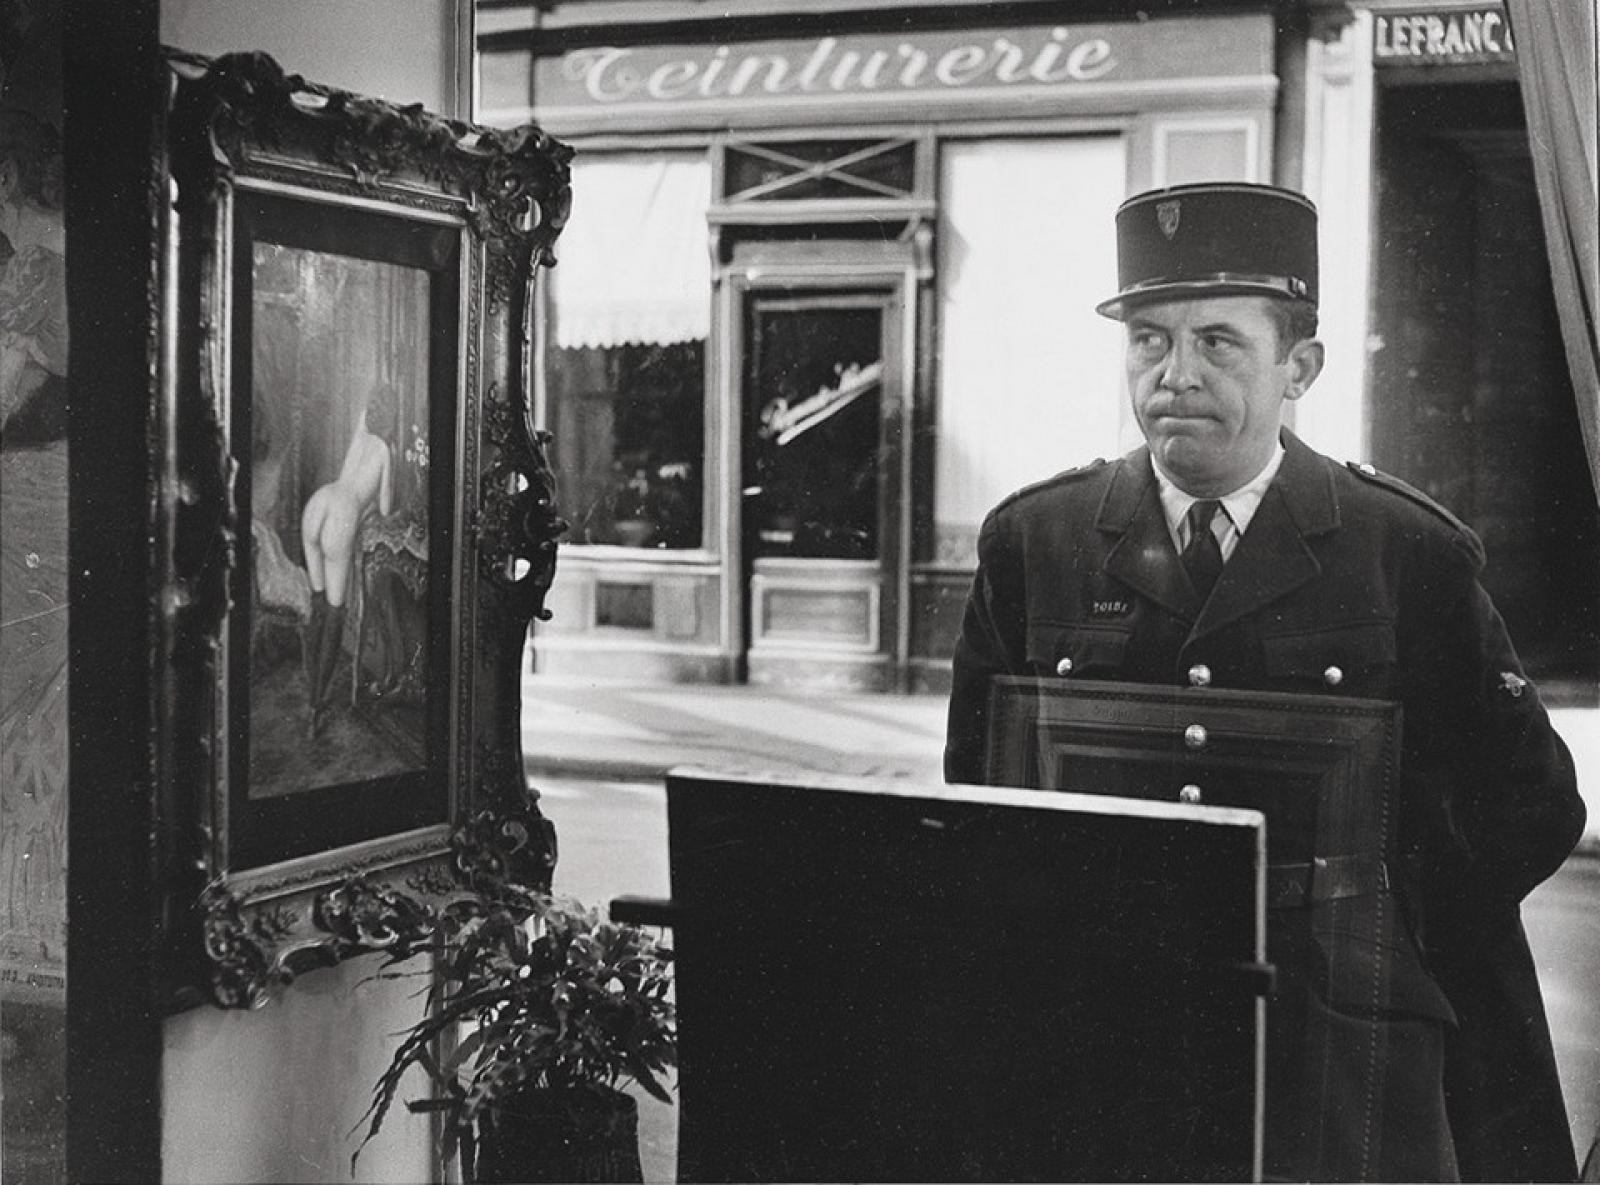 Косой взгляд. Галерея Роми в Париже, 1948. Фотограф Робер Дуано